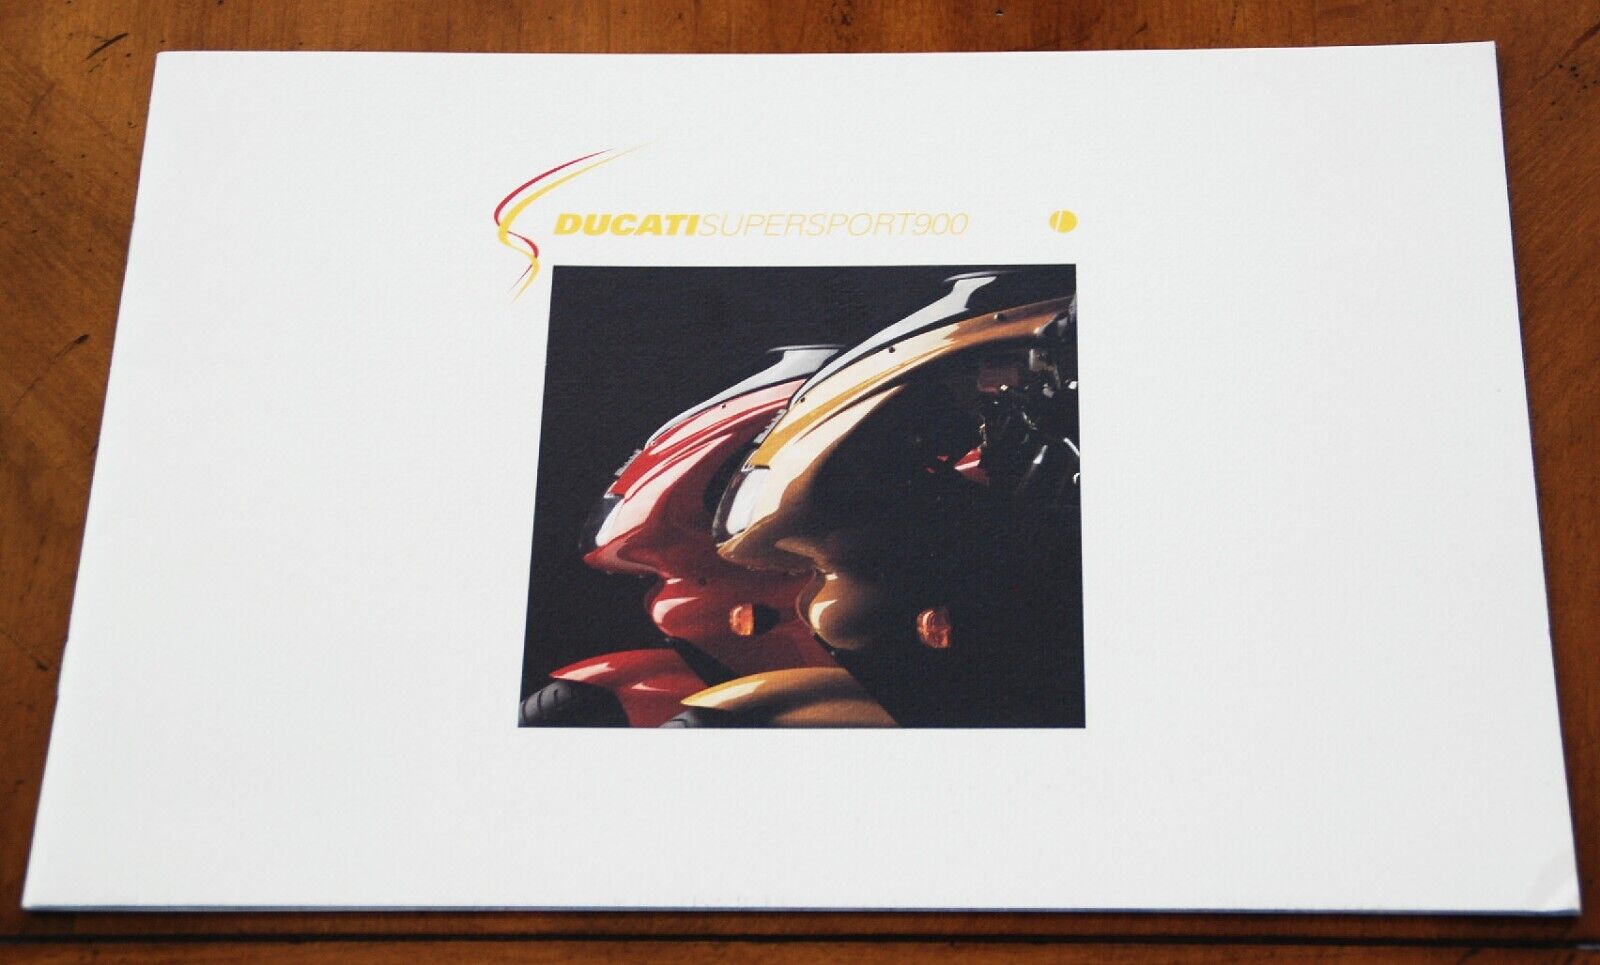 Ducati Supersport 900 prestige brochure Prospekt, 1999 (English & Italian text)